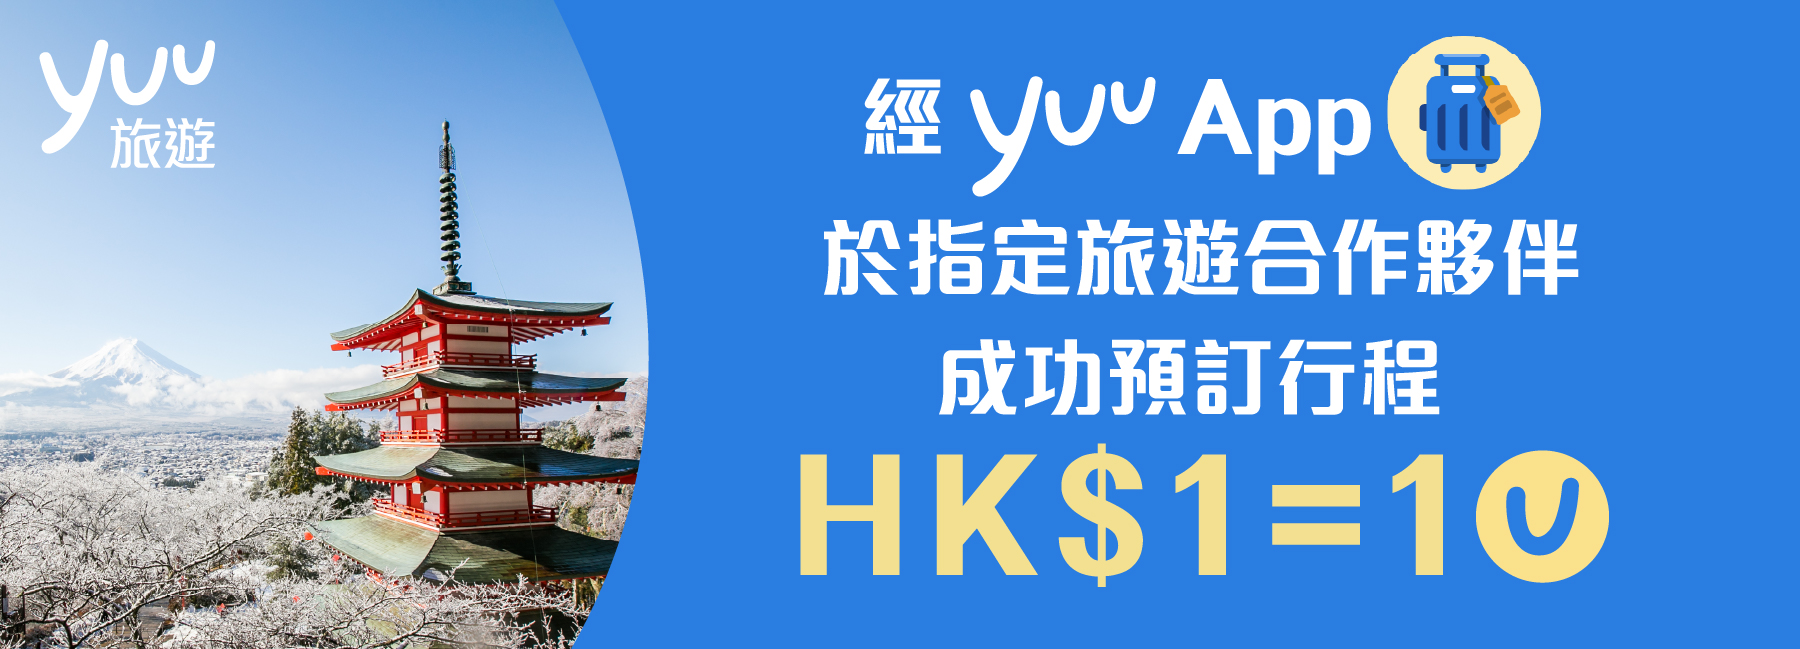 經yuuApp於指定旅遊合作夥伴成功預約行程